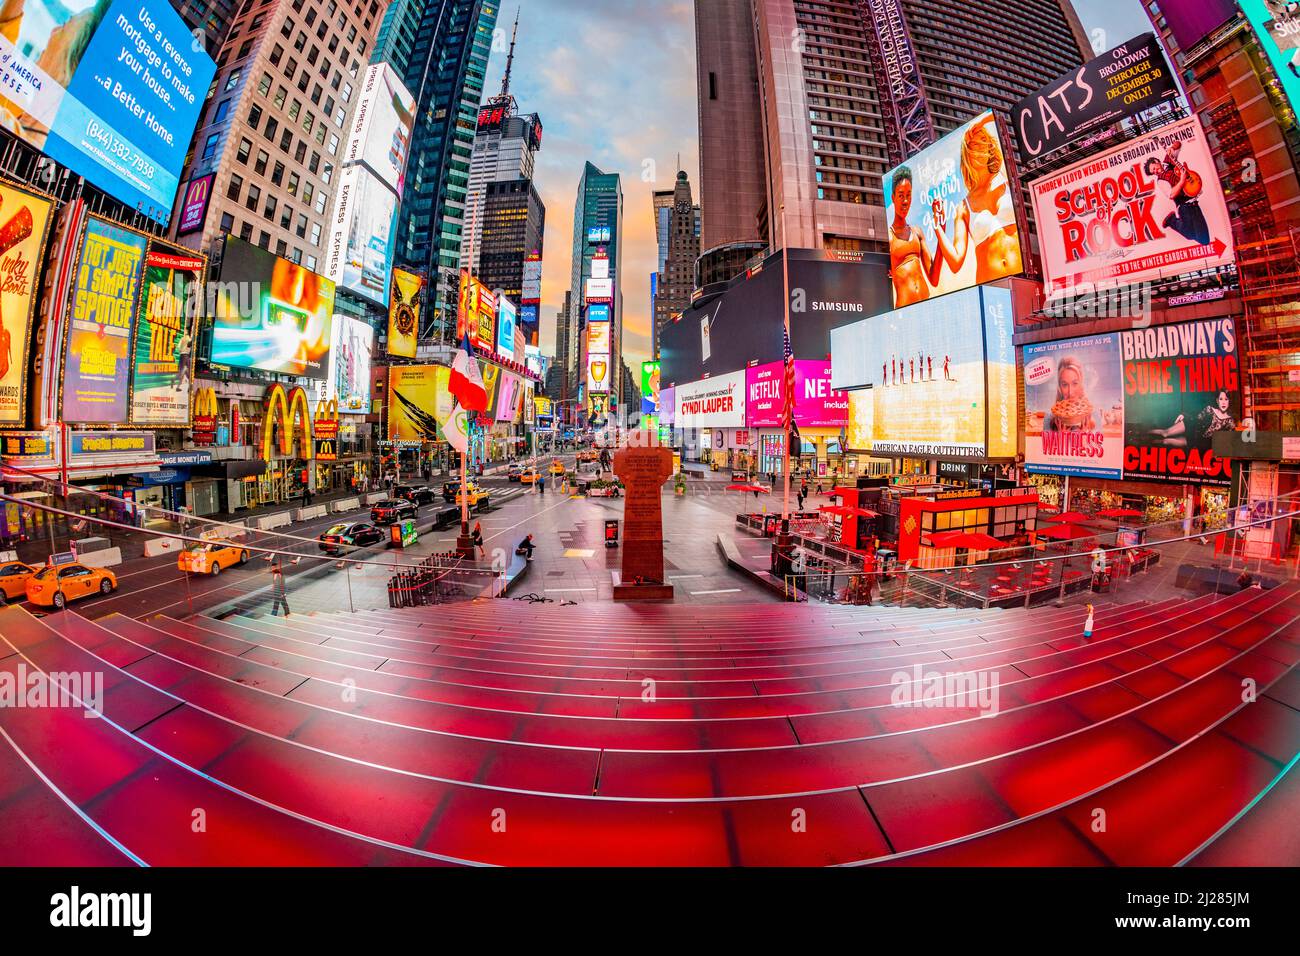 New York, Etats-Unis - 5 octobre 2017: Publicité de nouvelles, marques et théâtres à Times Square en début de matinée au lever du soleil. Times Square est un symbole pour ne Banque D'Images